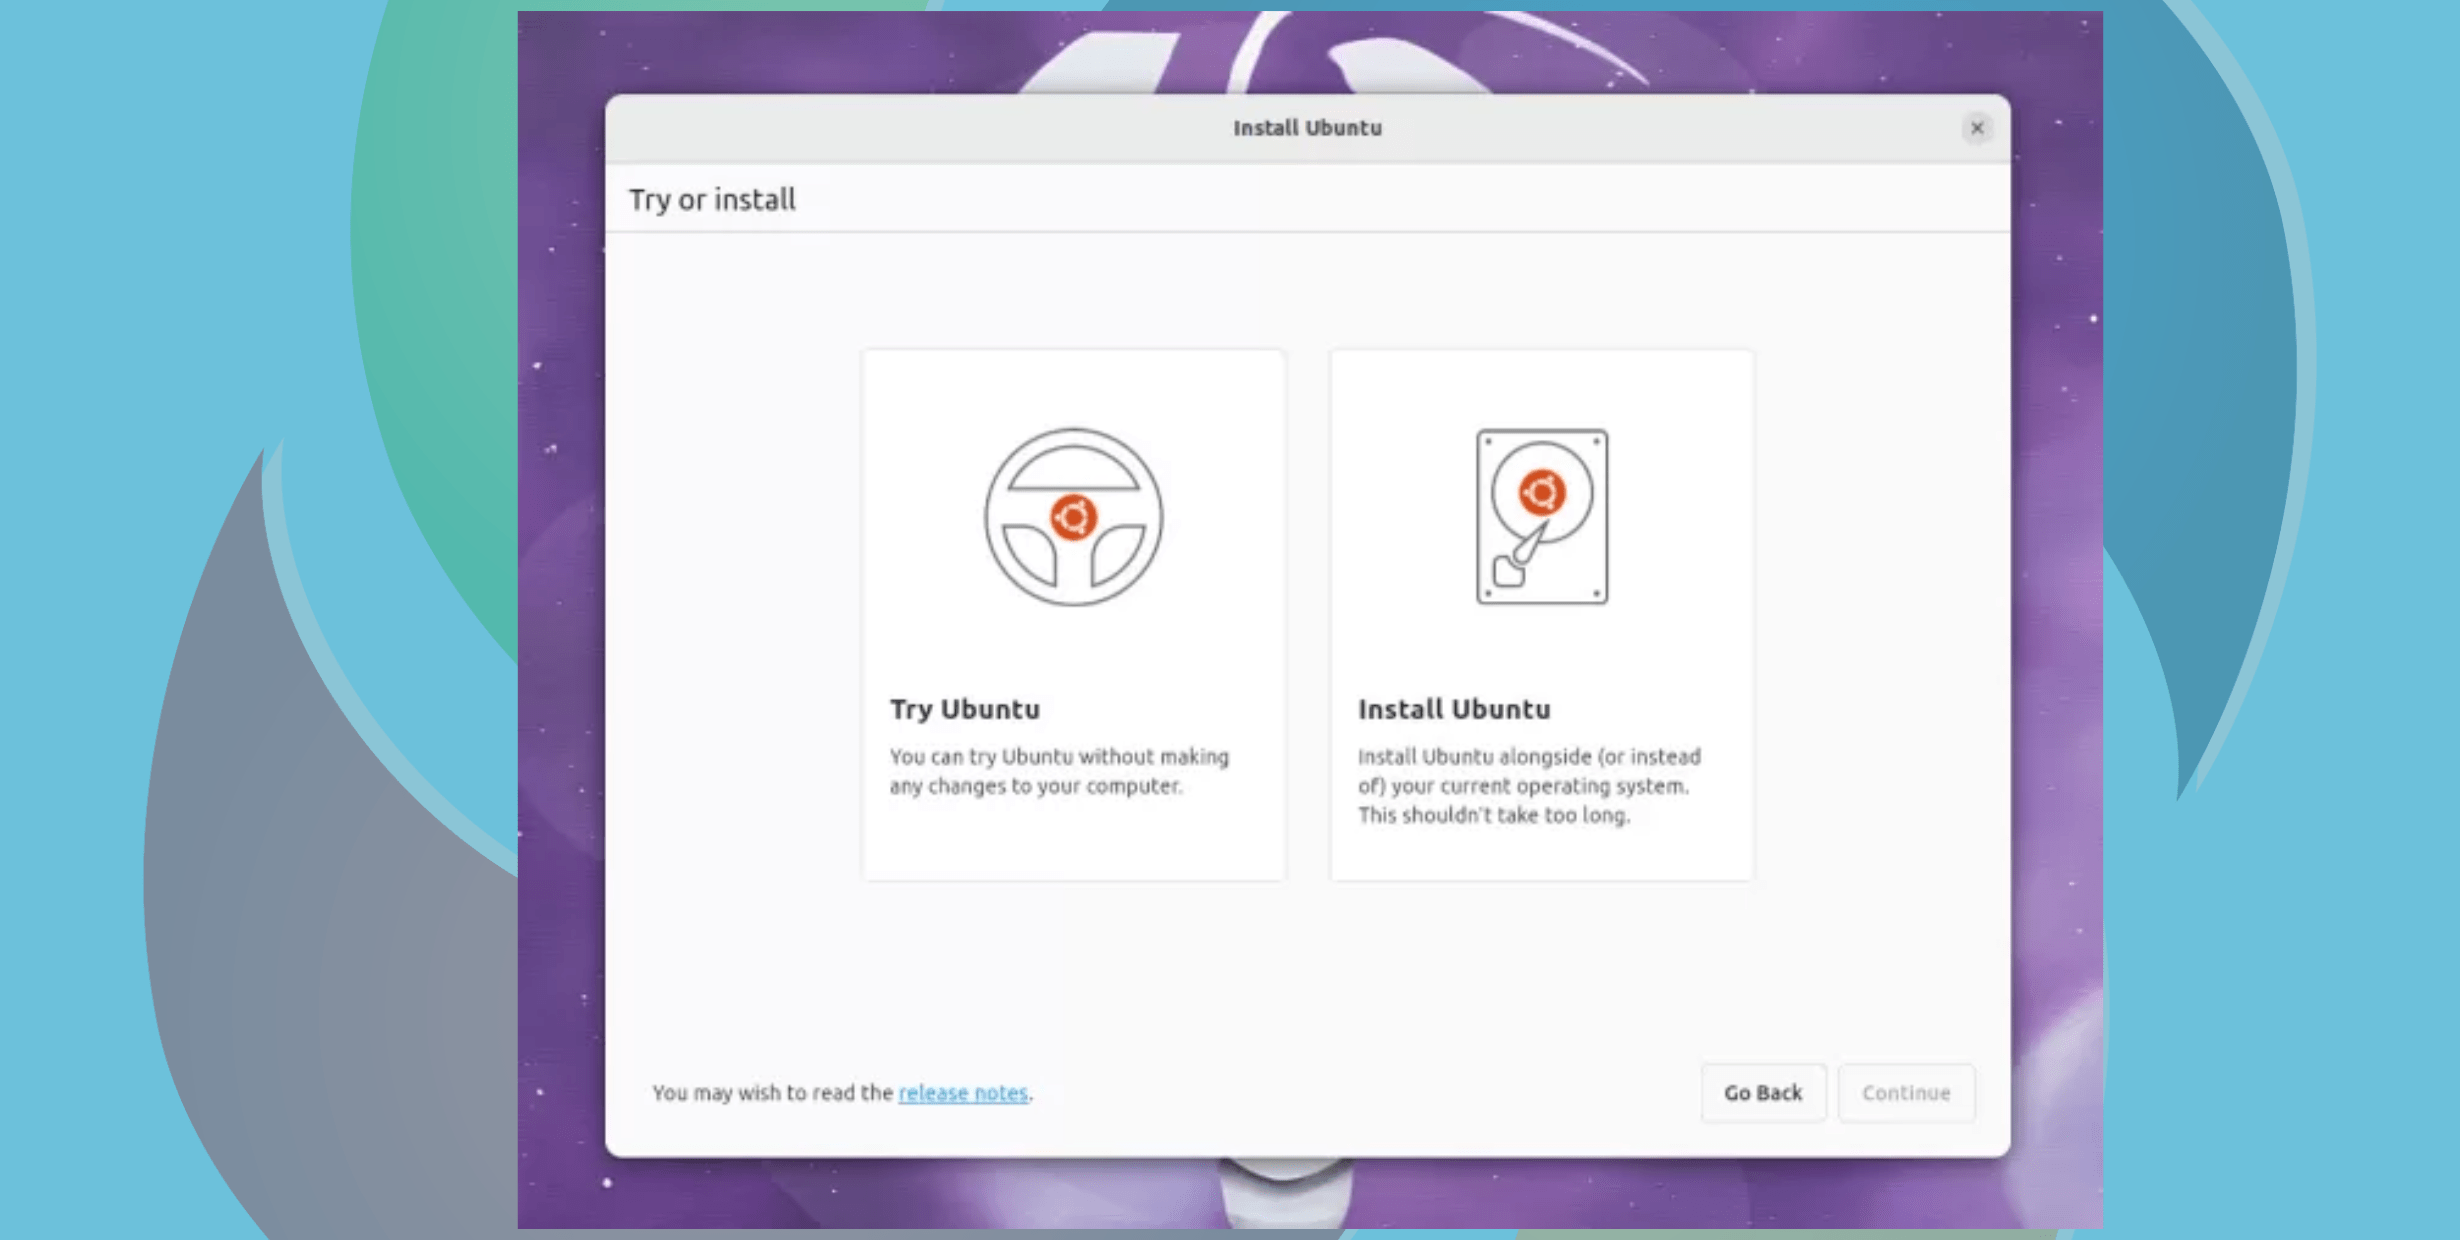 Novo instalador de desktop do Ubuntu terá instalação automática e integração com o Active Directory